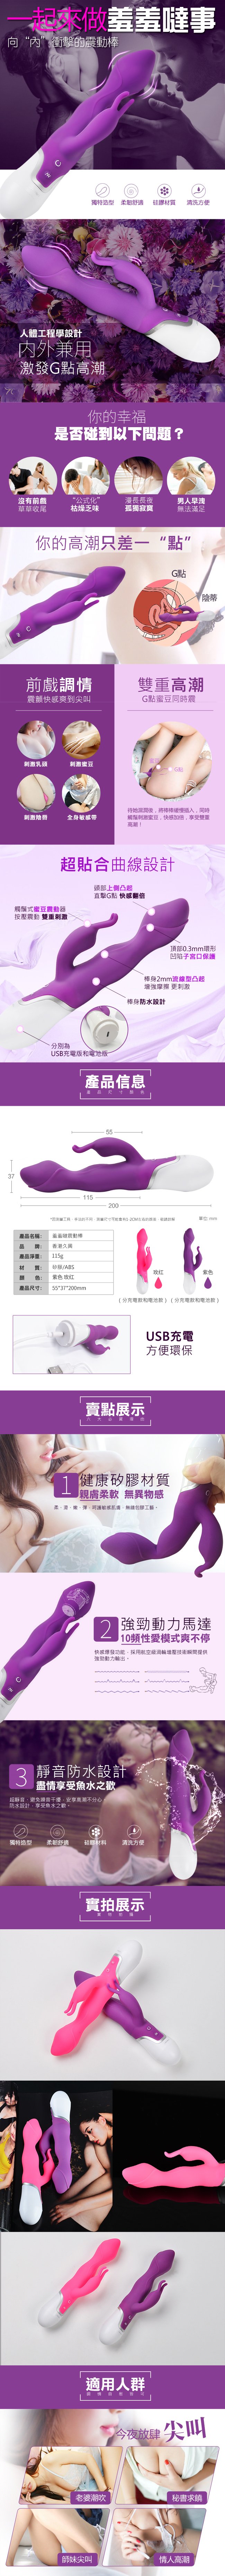 香港久興-羞羞噠10段變頻G點按摩棒-紫色 USB充電款(特)